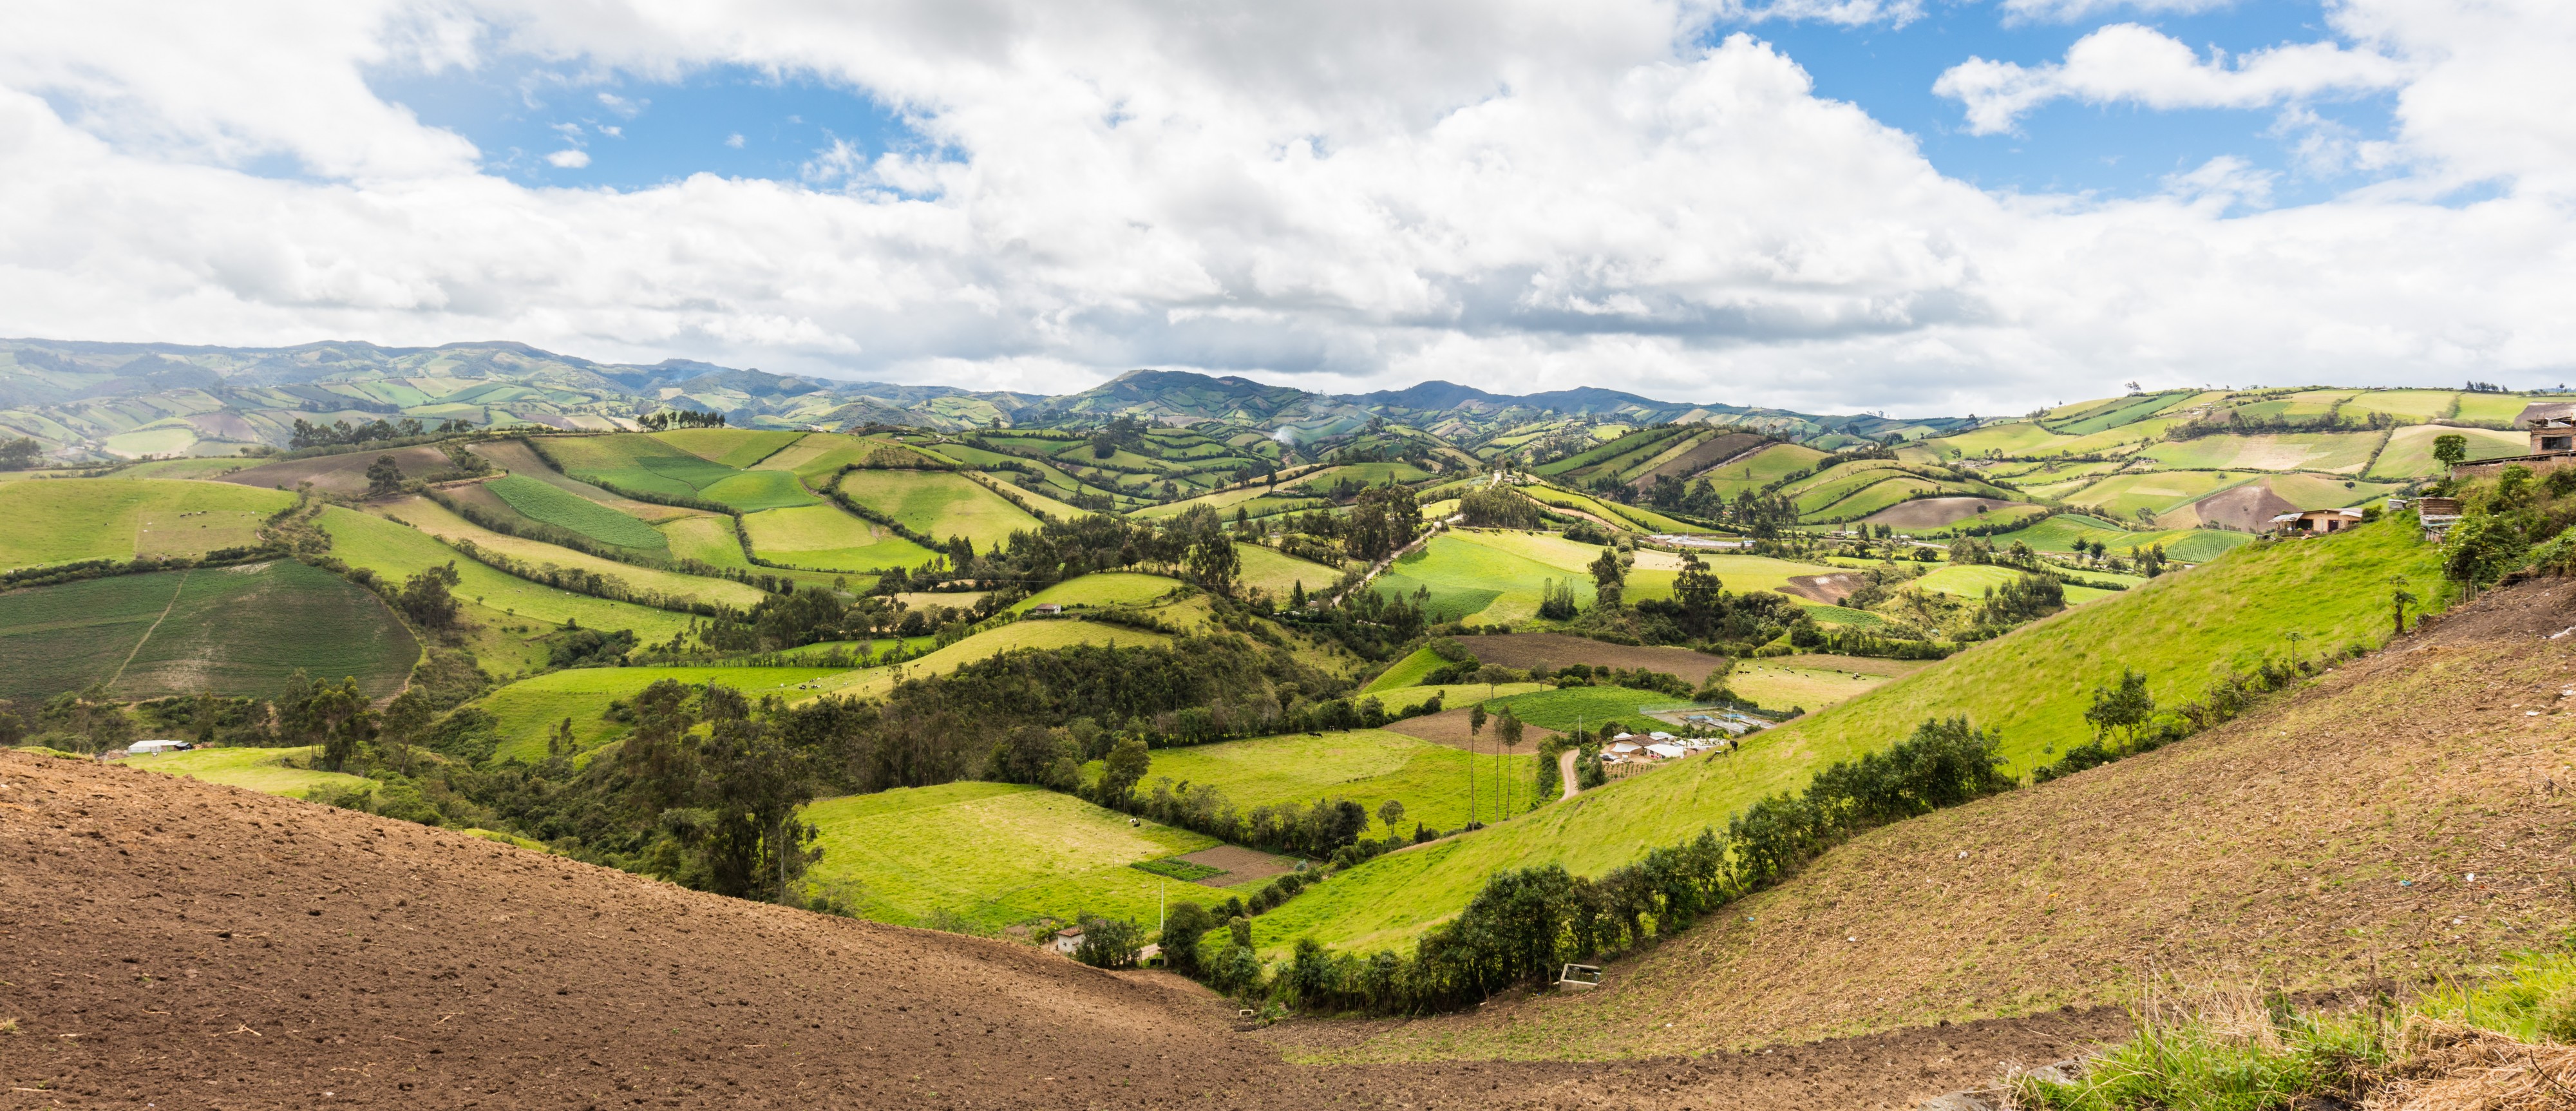 Vista desde Julio Andrade, Provincia de Carchi, Ecuador, 2015-07-21, DD 41